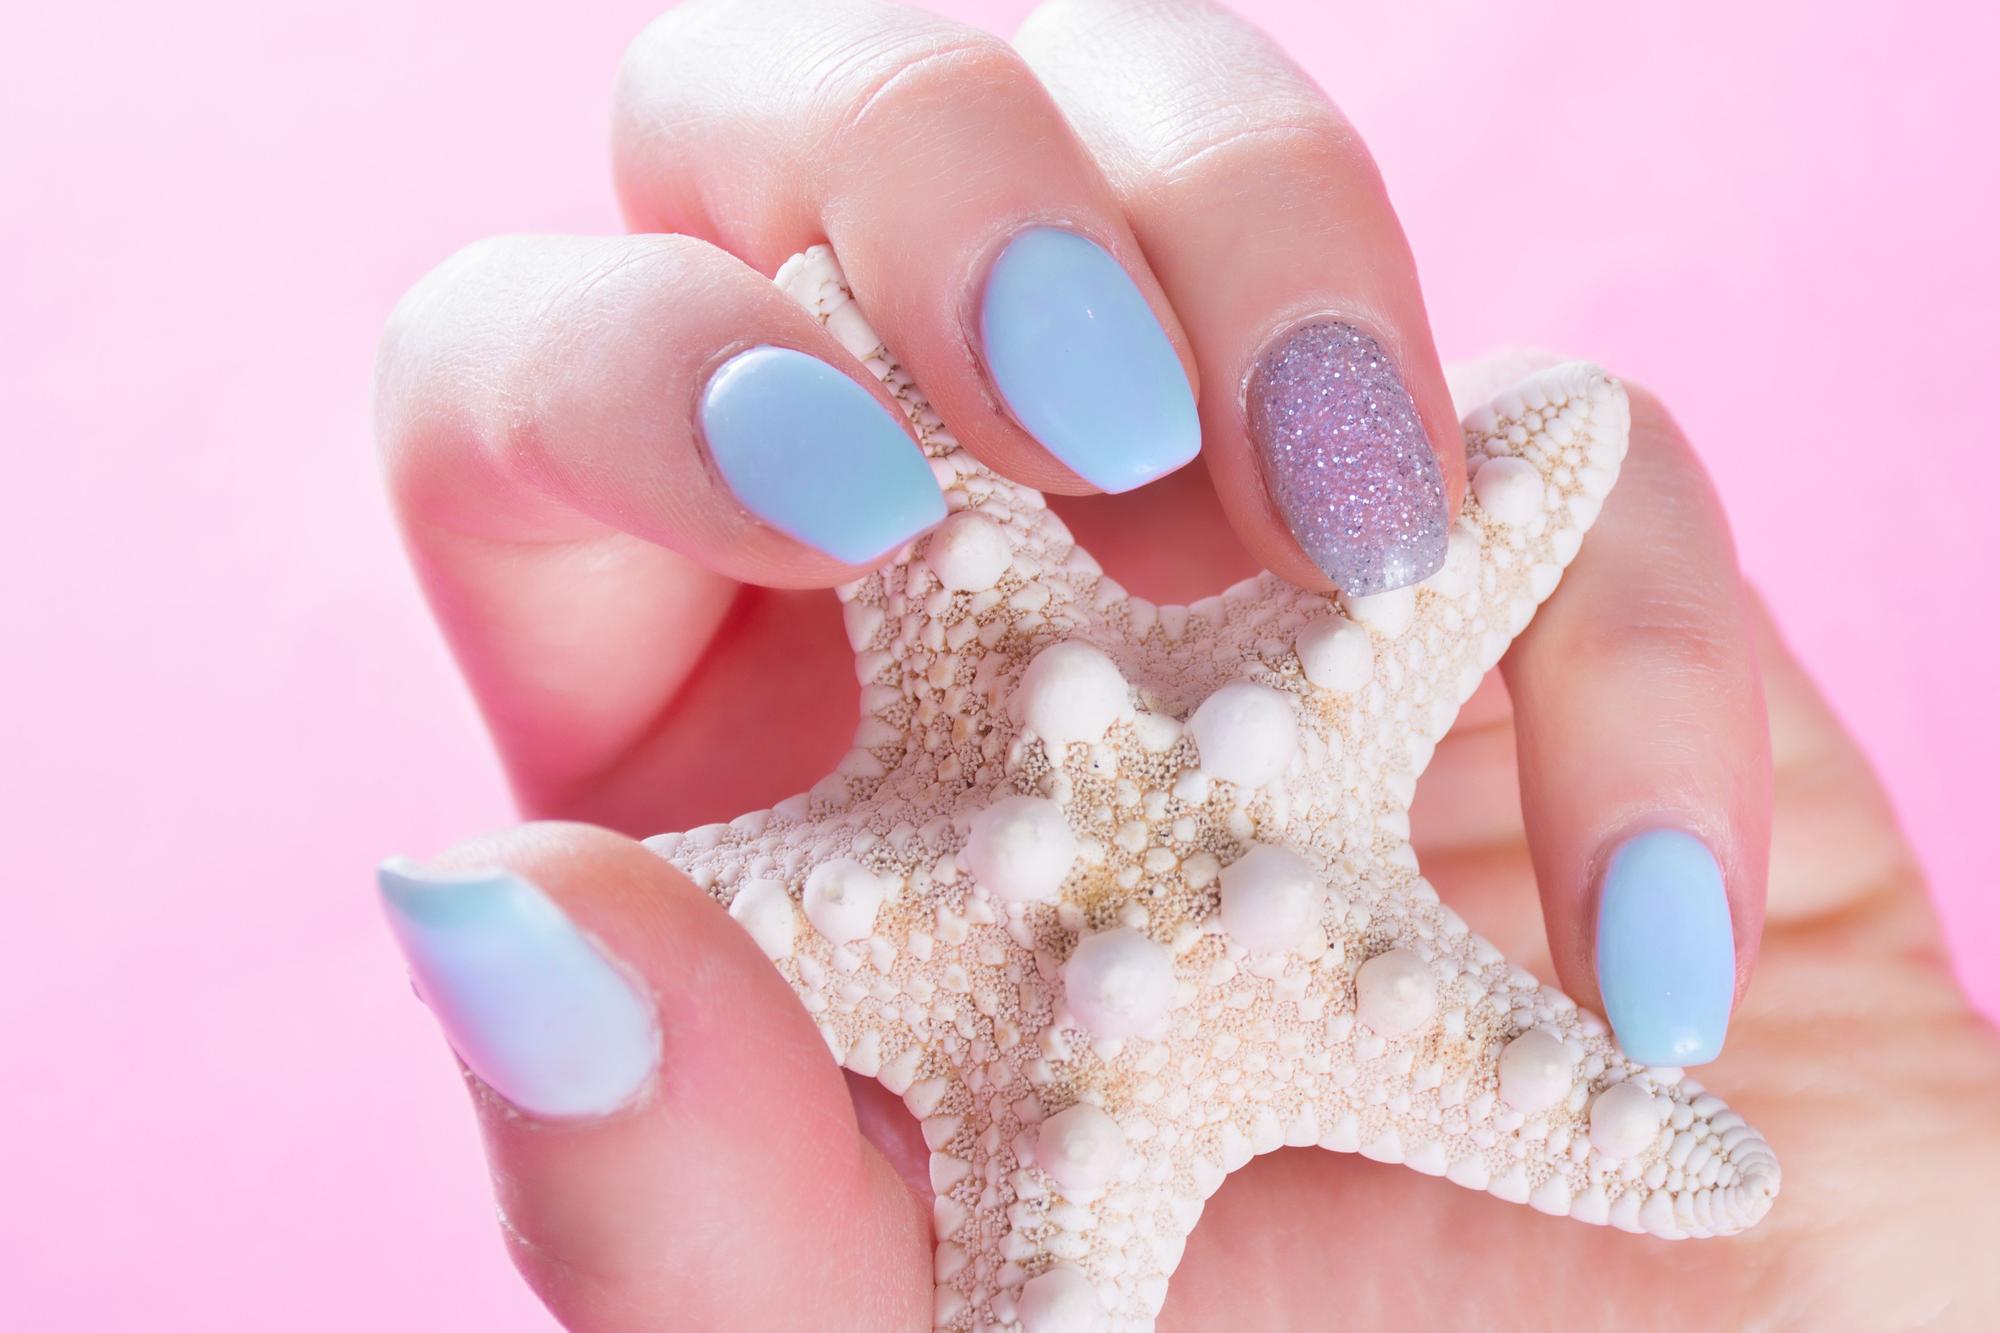 Manicura mermaidcore: la tendencia en color de uñas